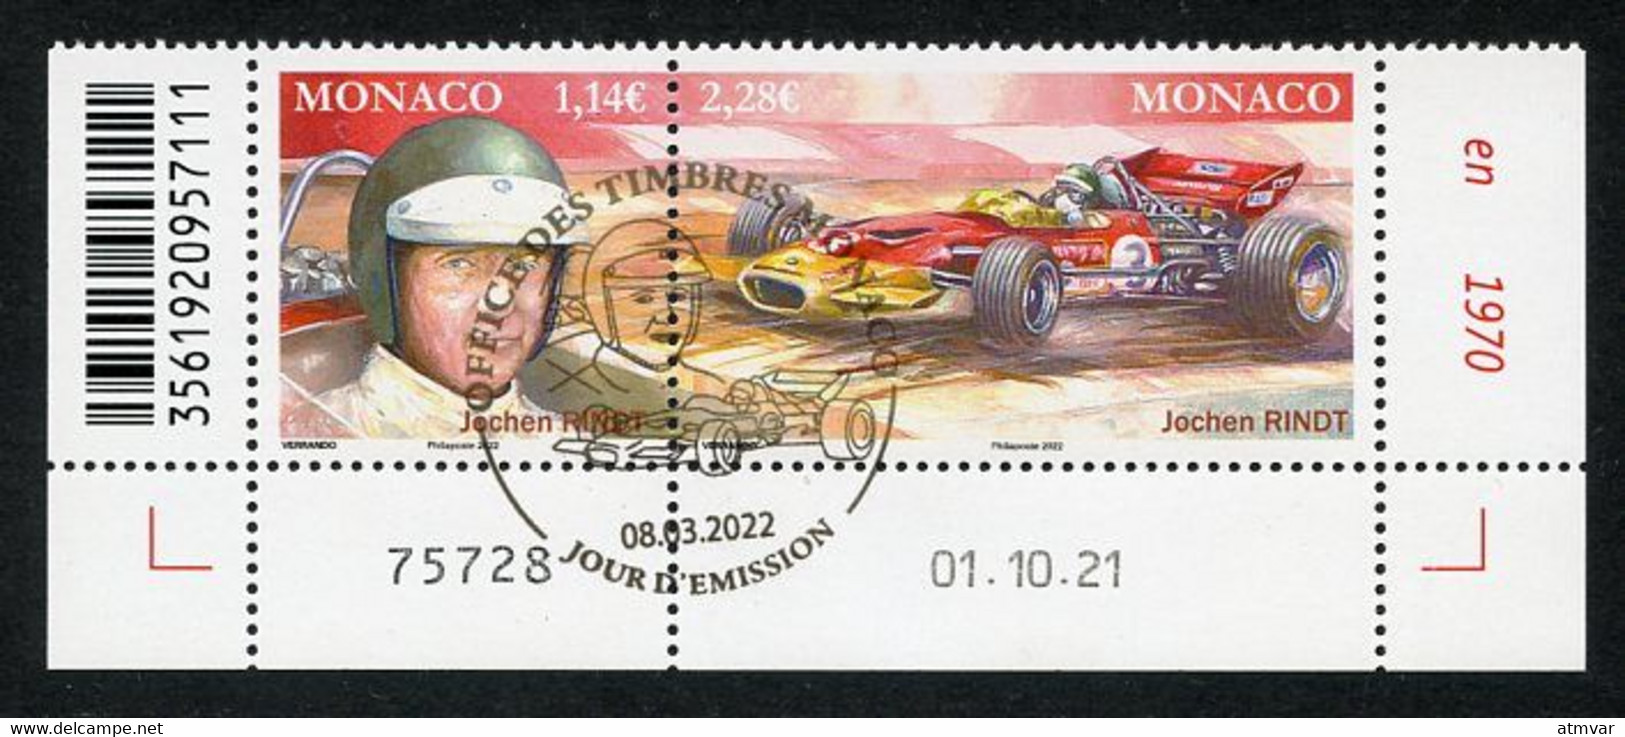 MONACO (2022) Pilotes Mythiques, Formula Formule 1, F1, Jochen Rindt (1942-1970), Grand Prix, Lotus 72 - Coin Daté - Gebraucht